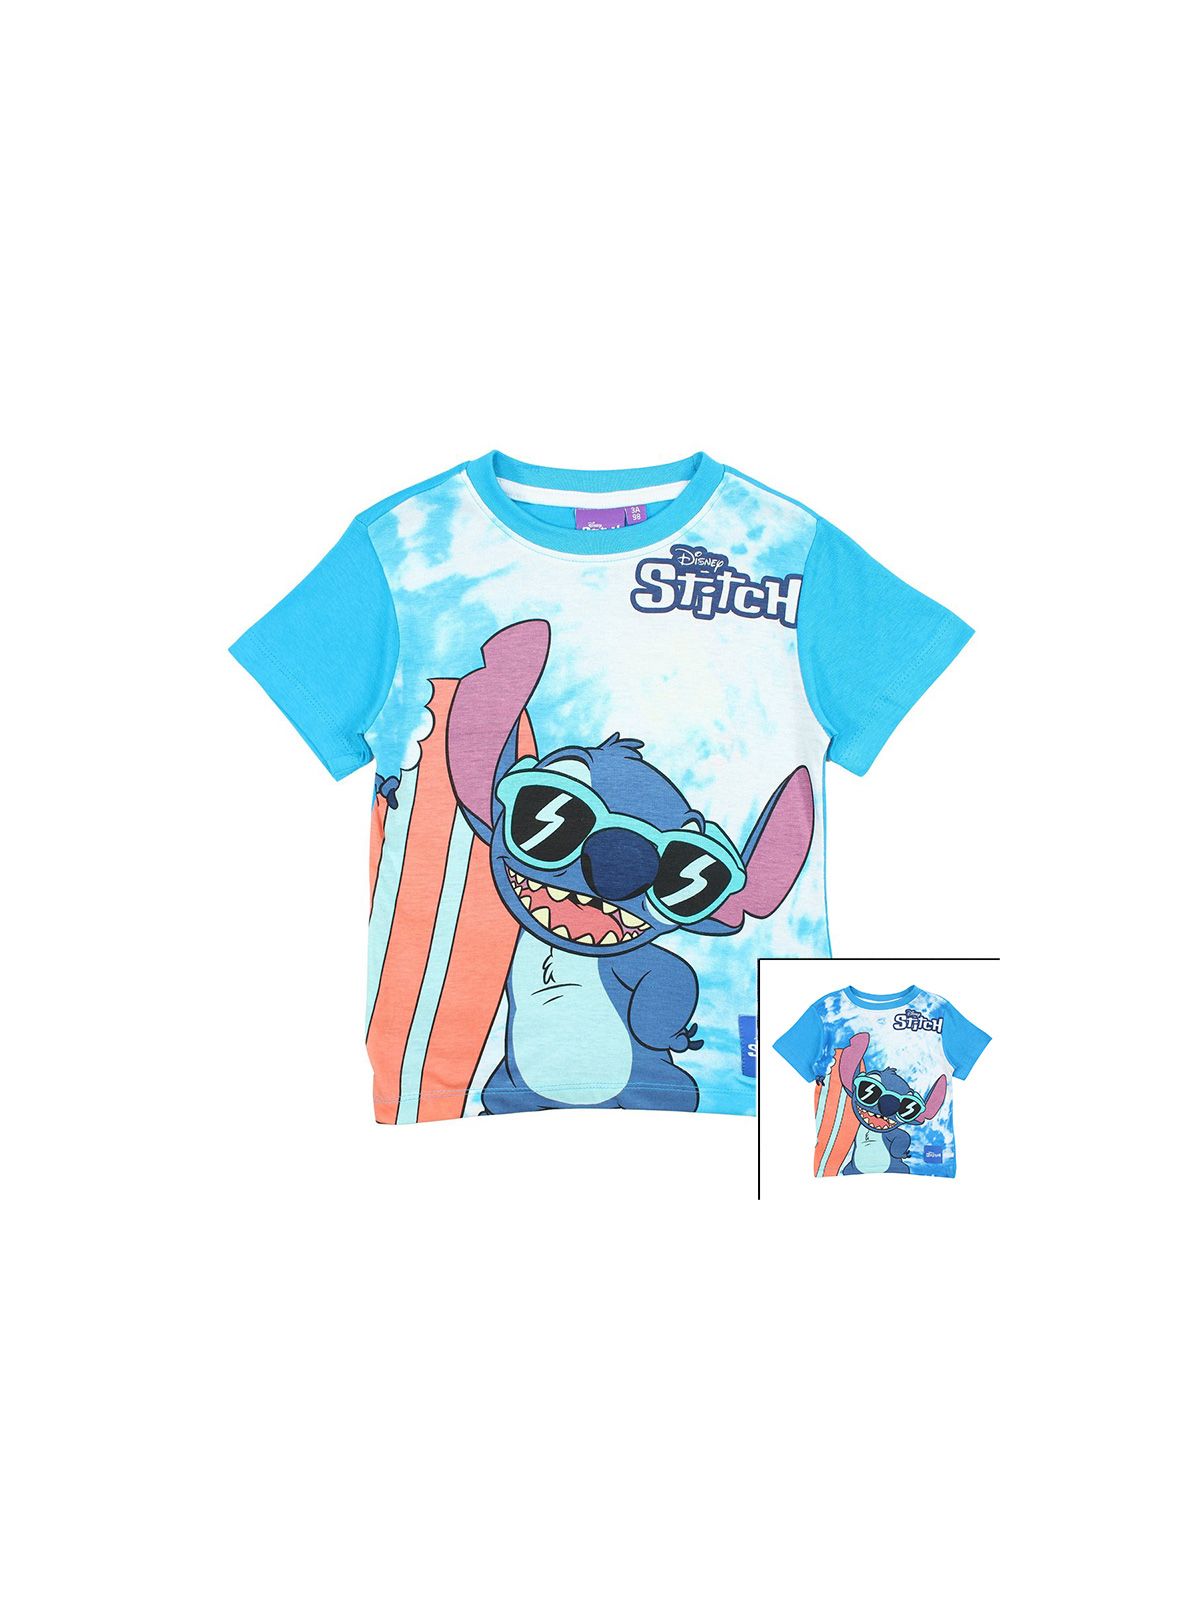 Maglietta di Lilo e Stitch.